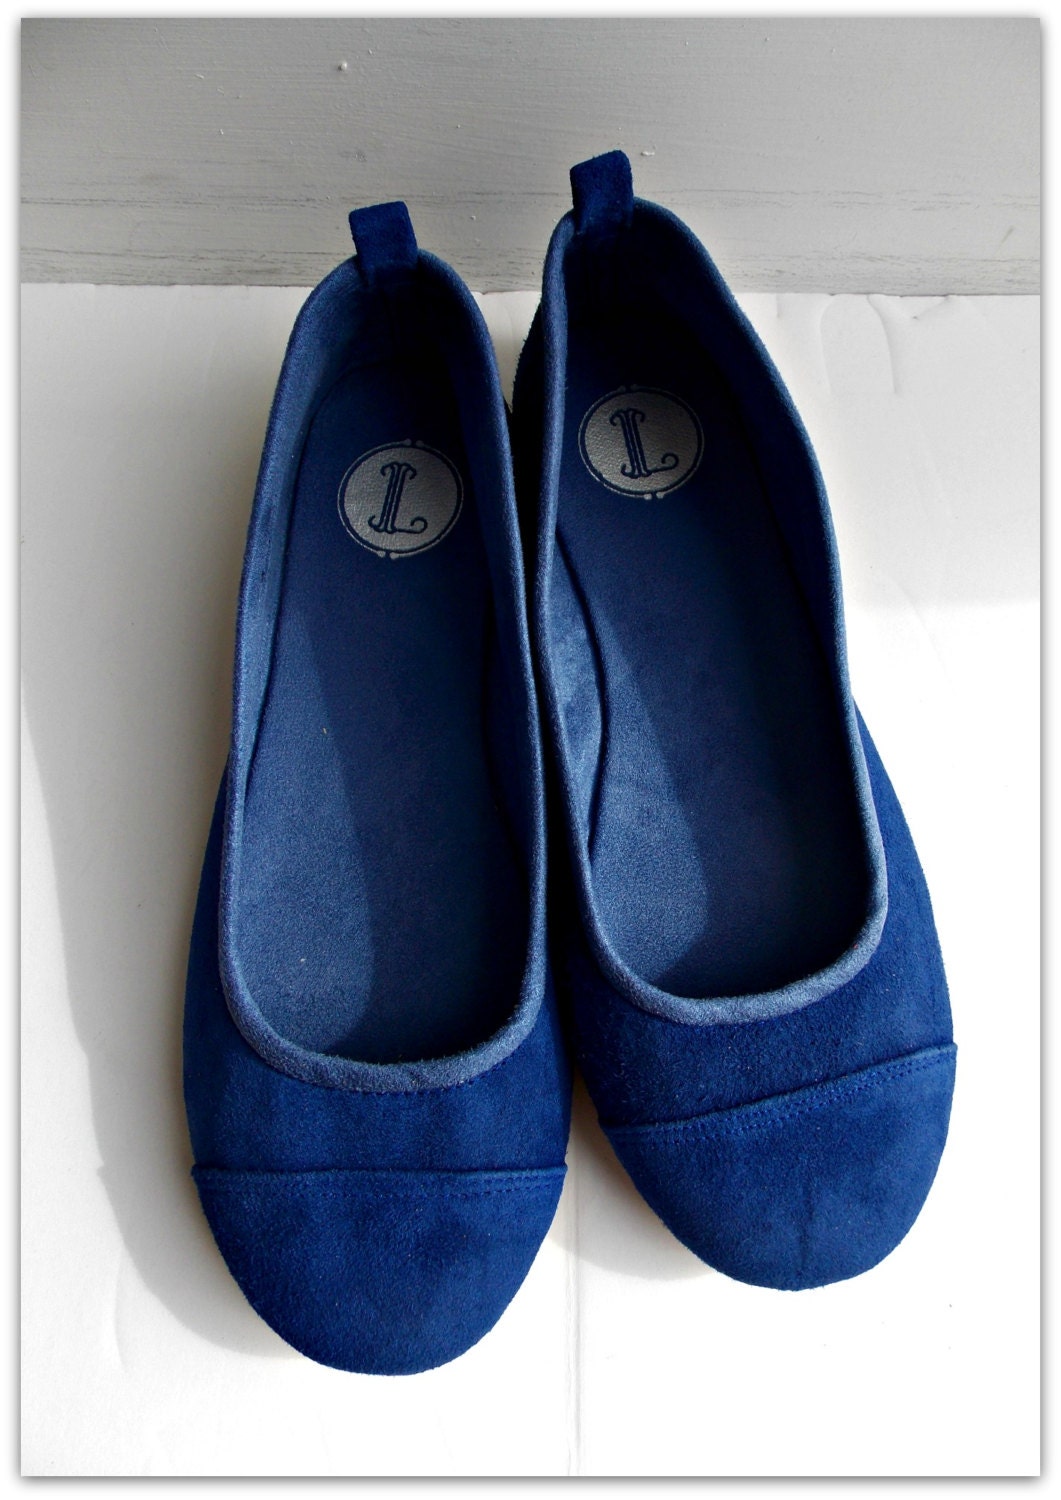 LUNAR. Cobalt Blue Flats / Women Shoes / Suede Flat Shoes / - Etsy